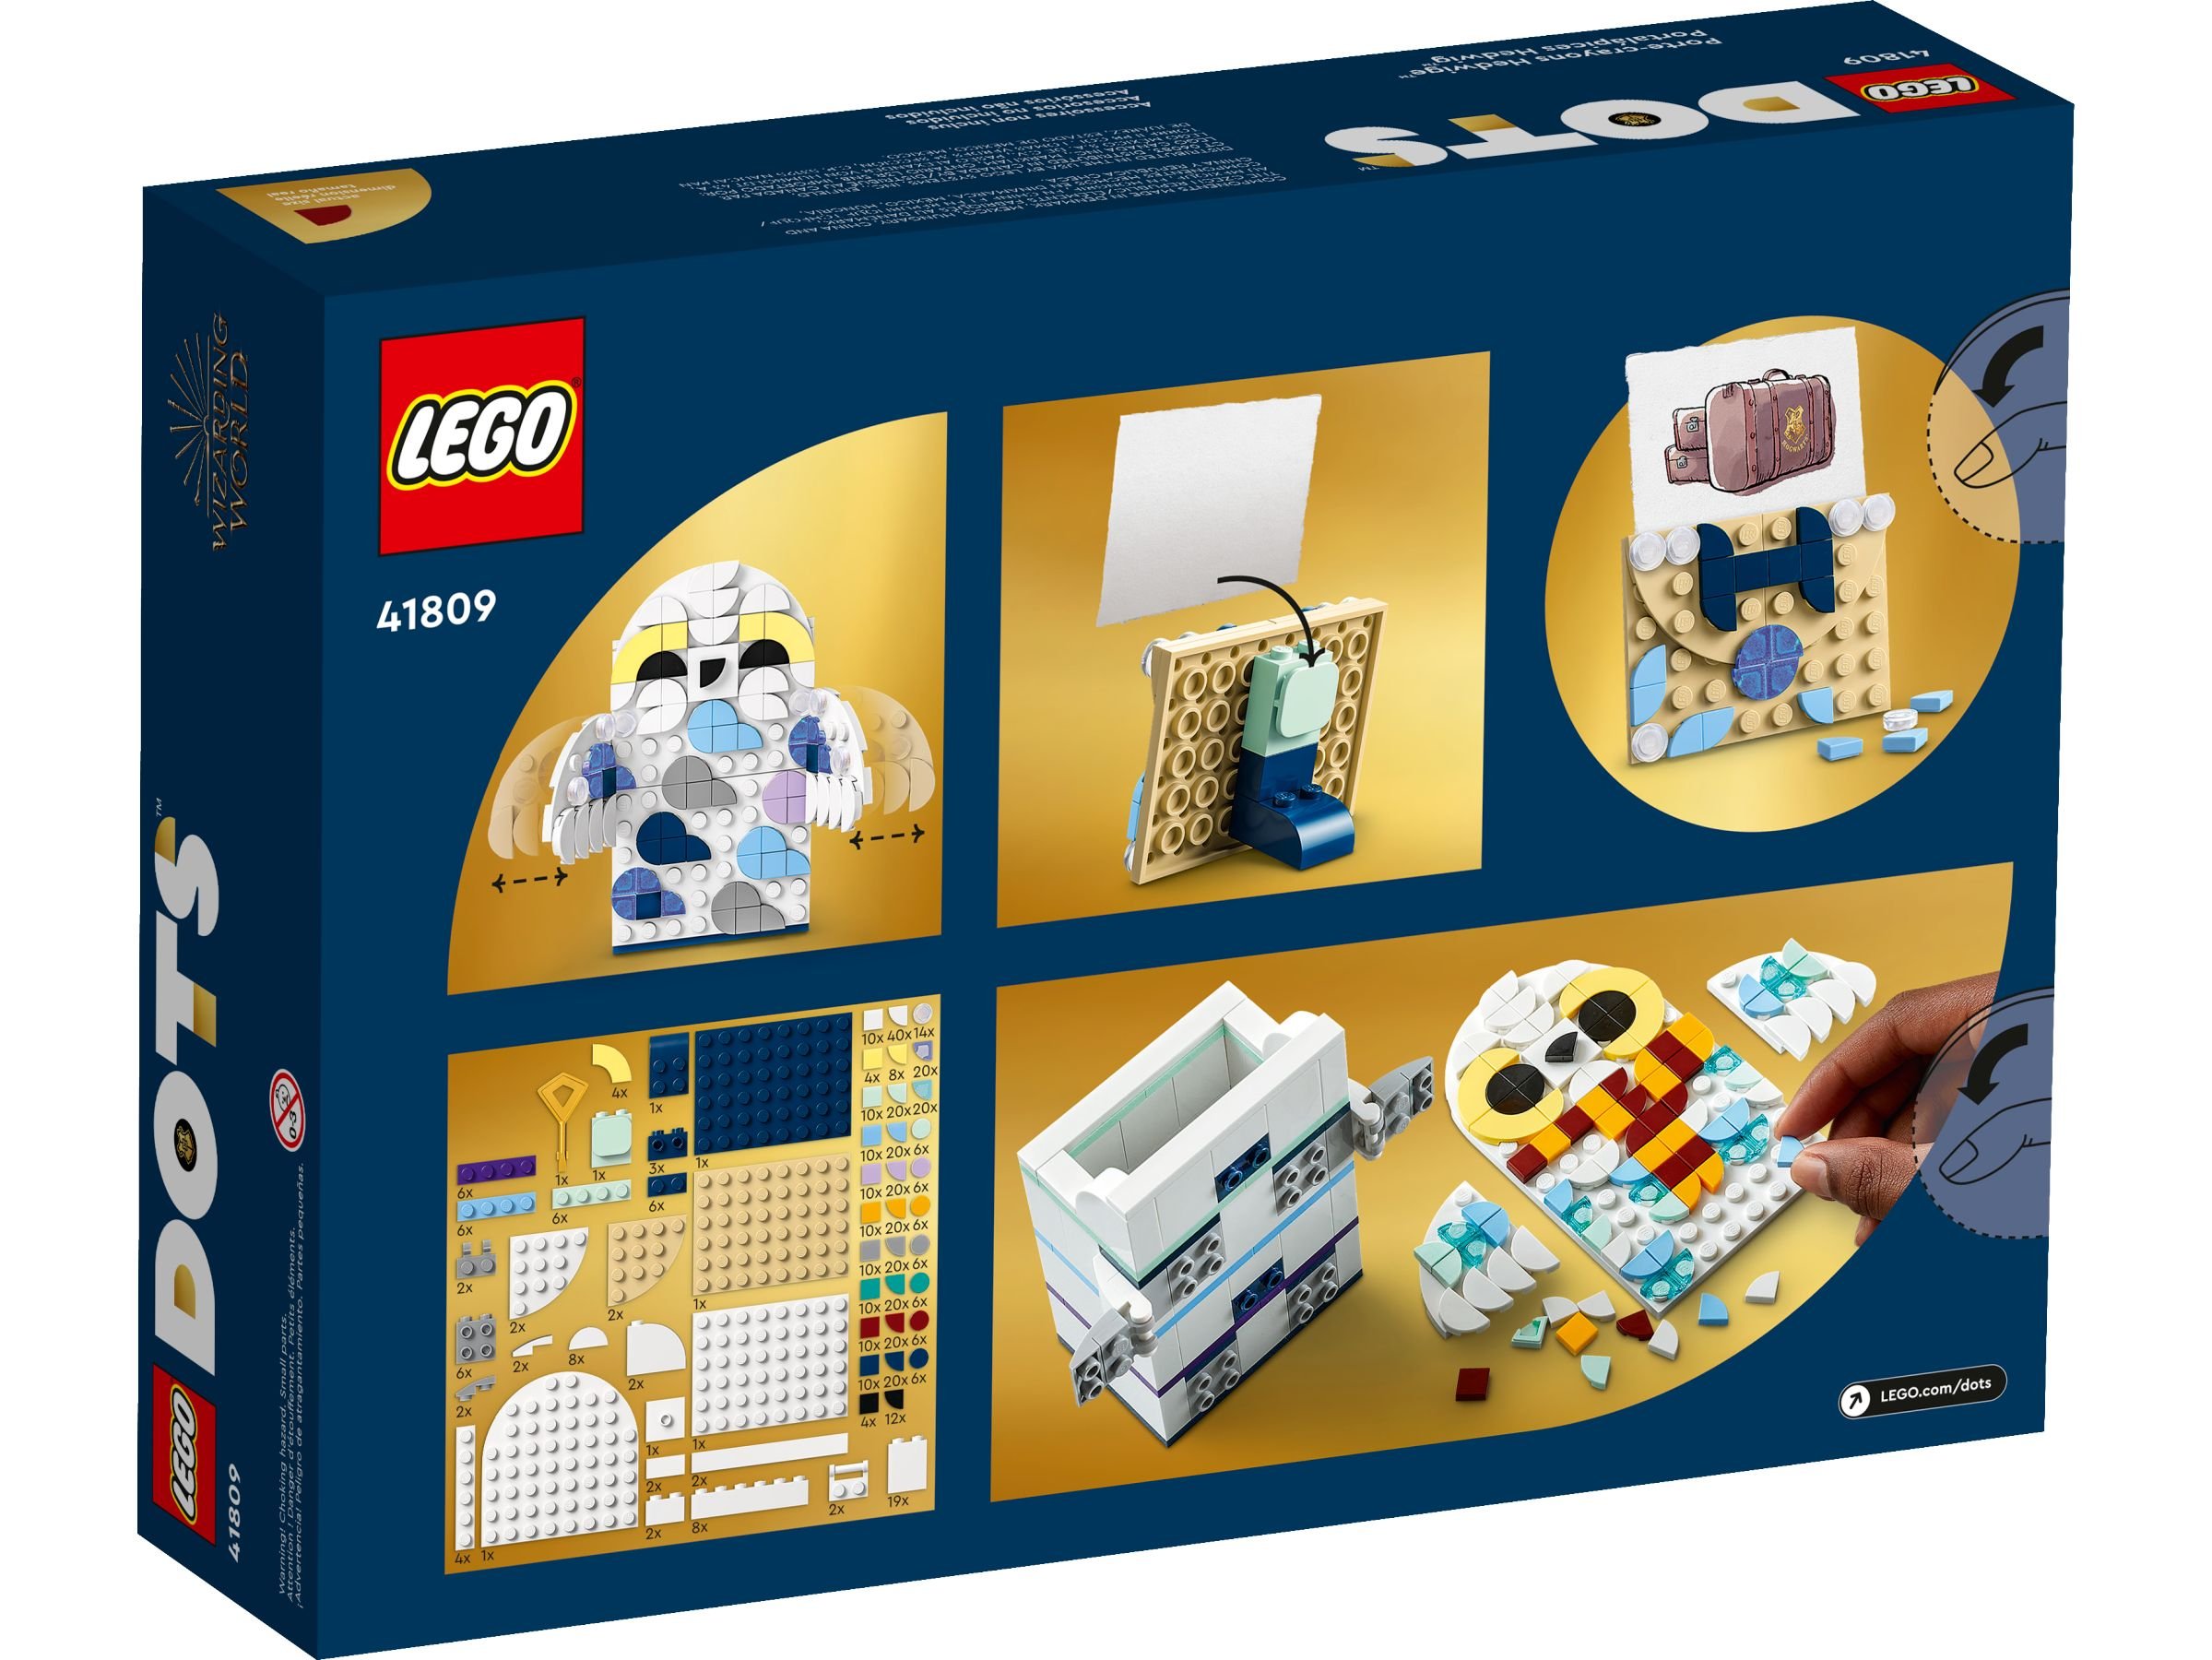 LEGO Dots 41809 Hedwig™ Stiftehalter LEGO_41809_alt7.jpg